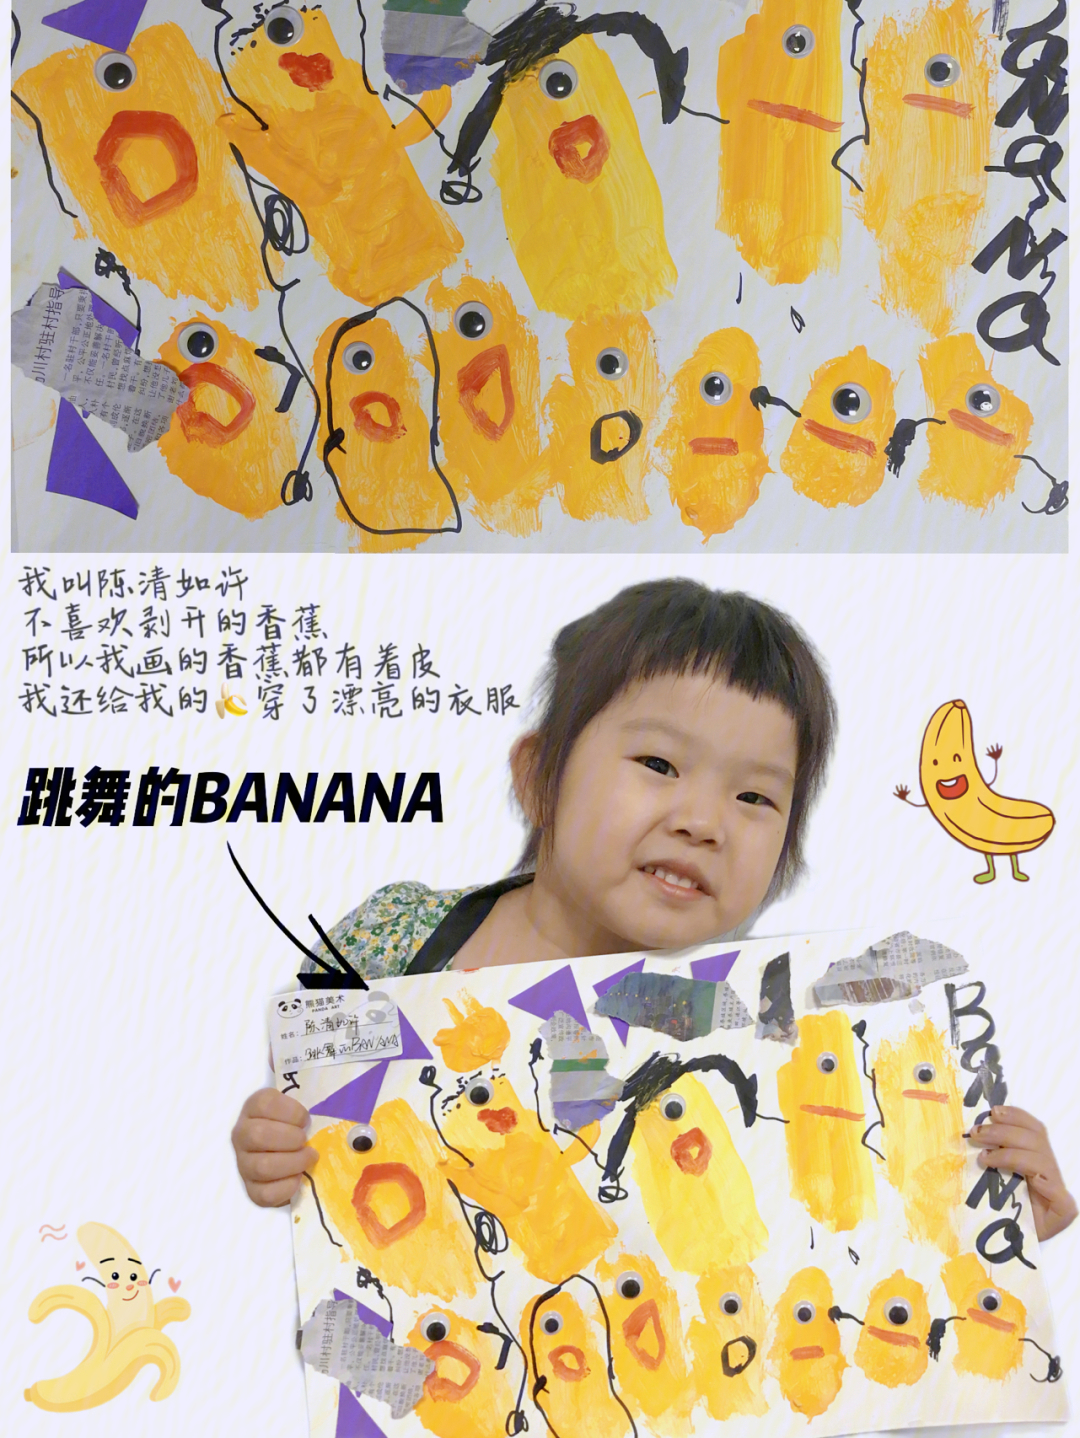 香蕉君黑白简笔画图片